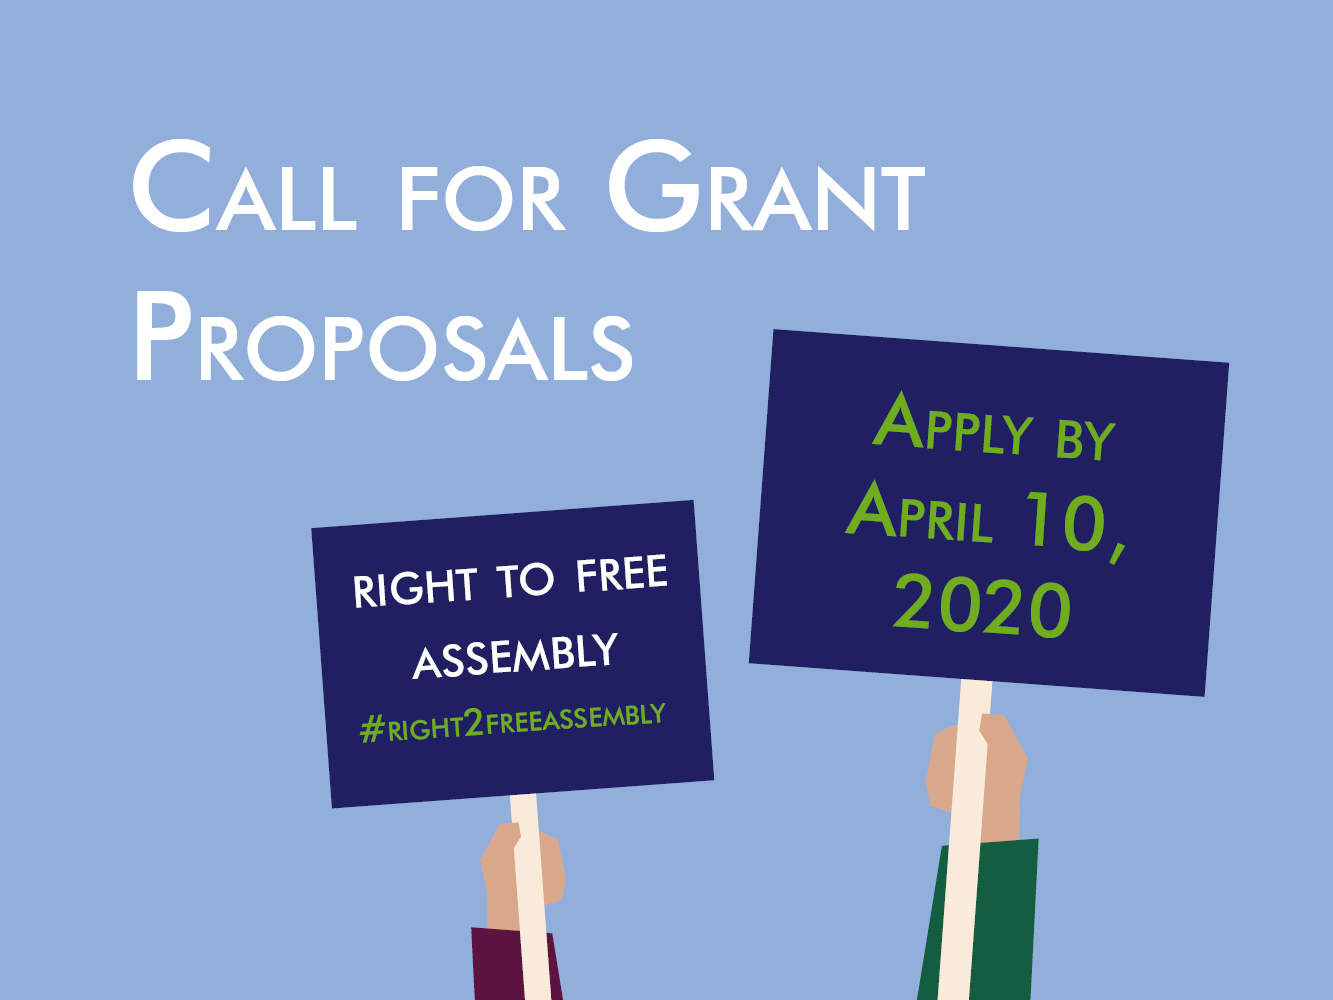 Call for grant proposals ECNL